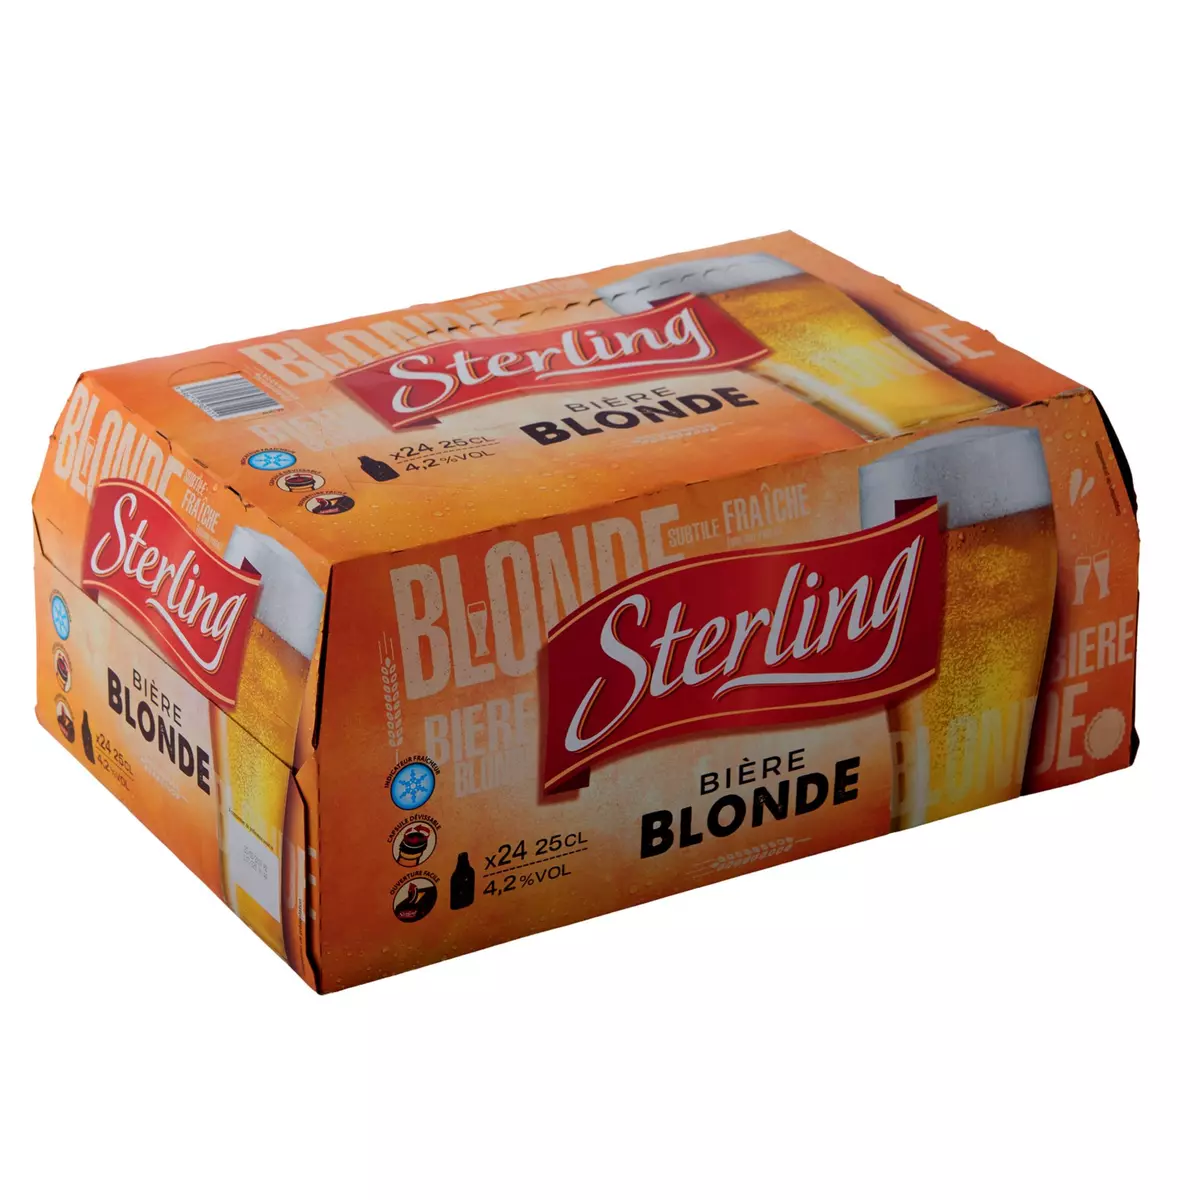 STERLING Bière blonde 4,2% bouteilles 24x25cl